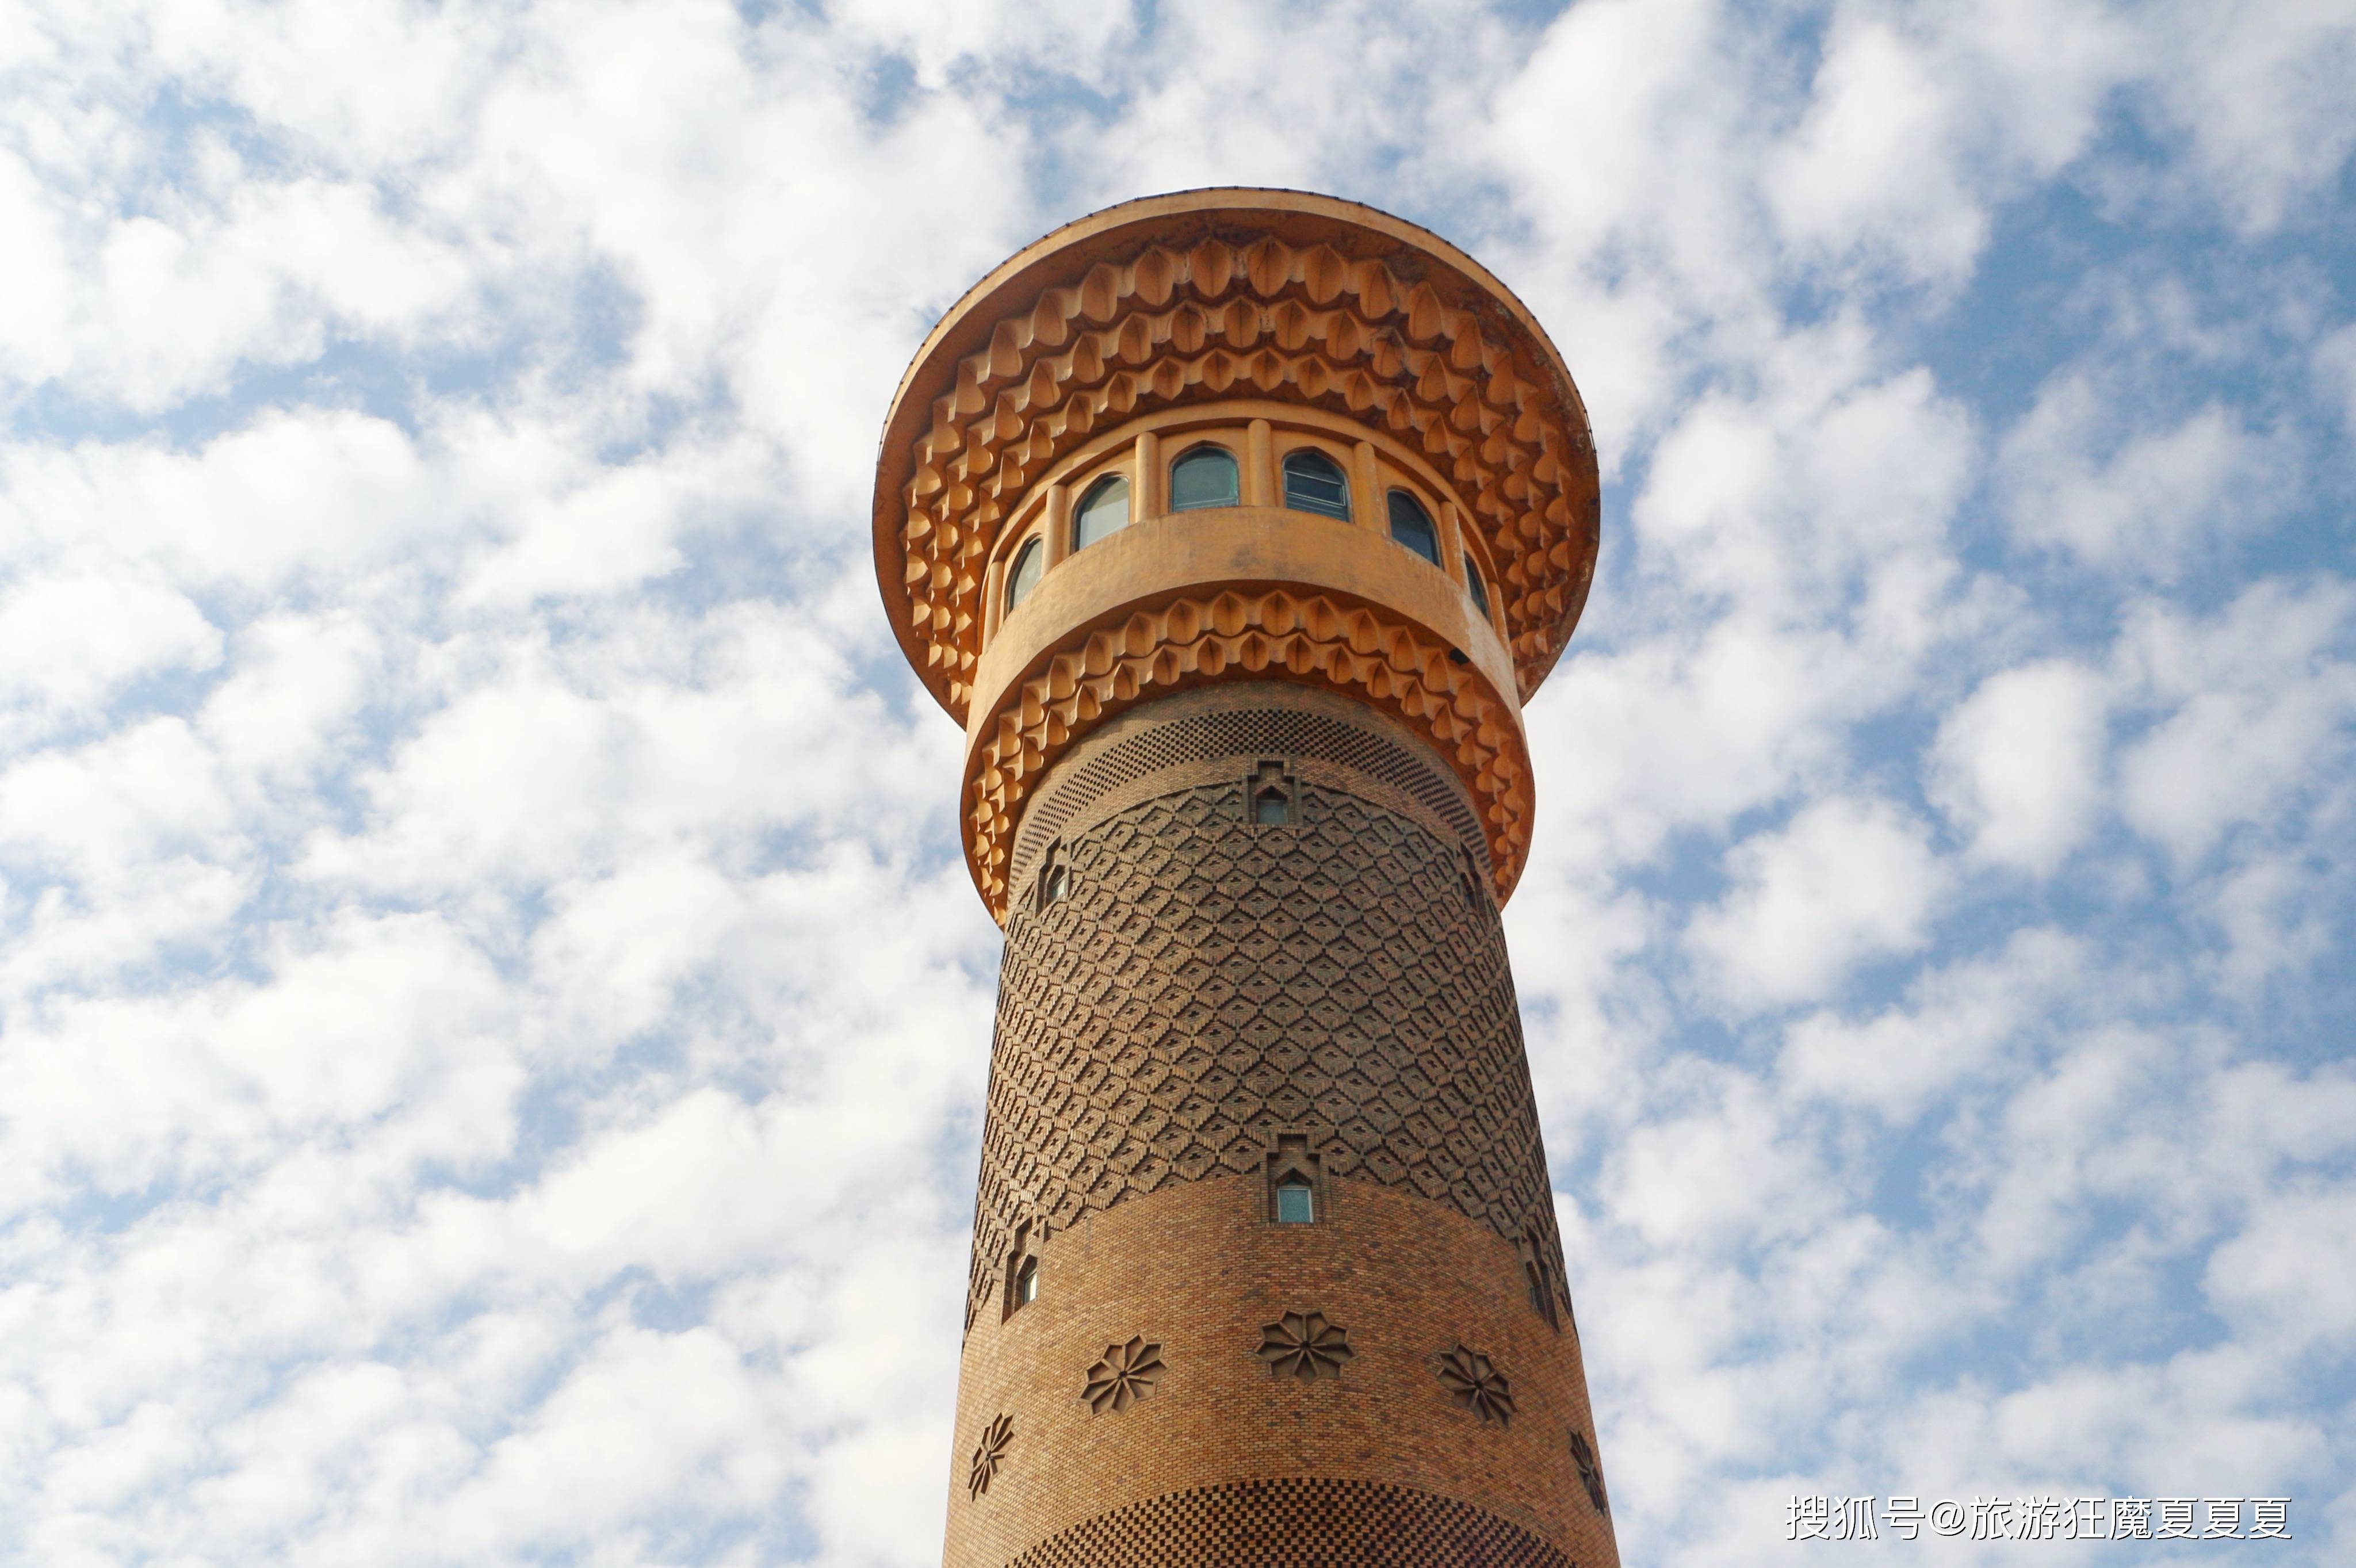 新疆乌鲁木齐十佳建筑之一,80米观光塔已成地标,规模世界之最